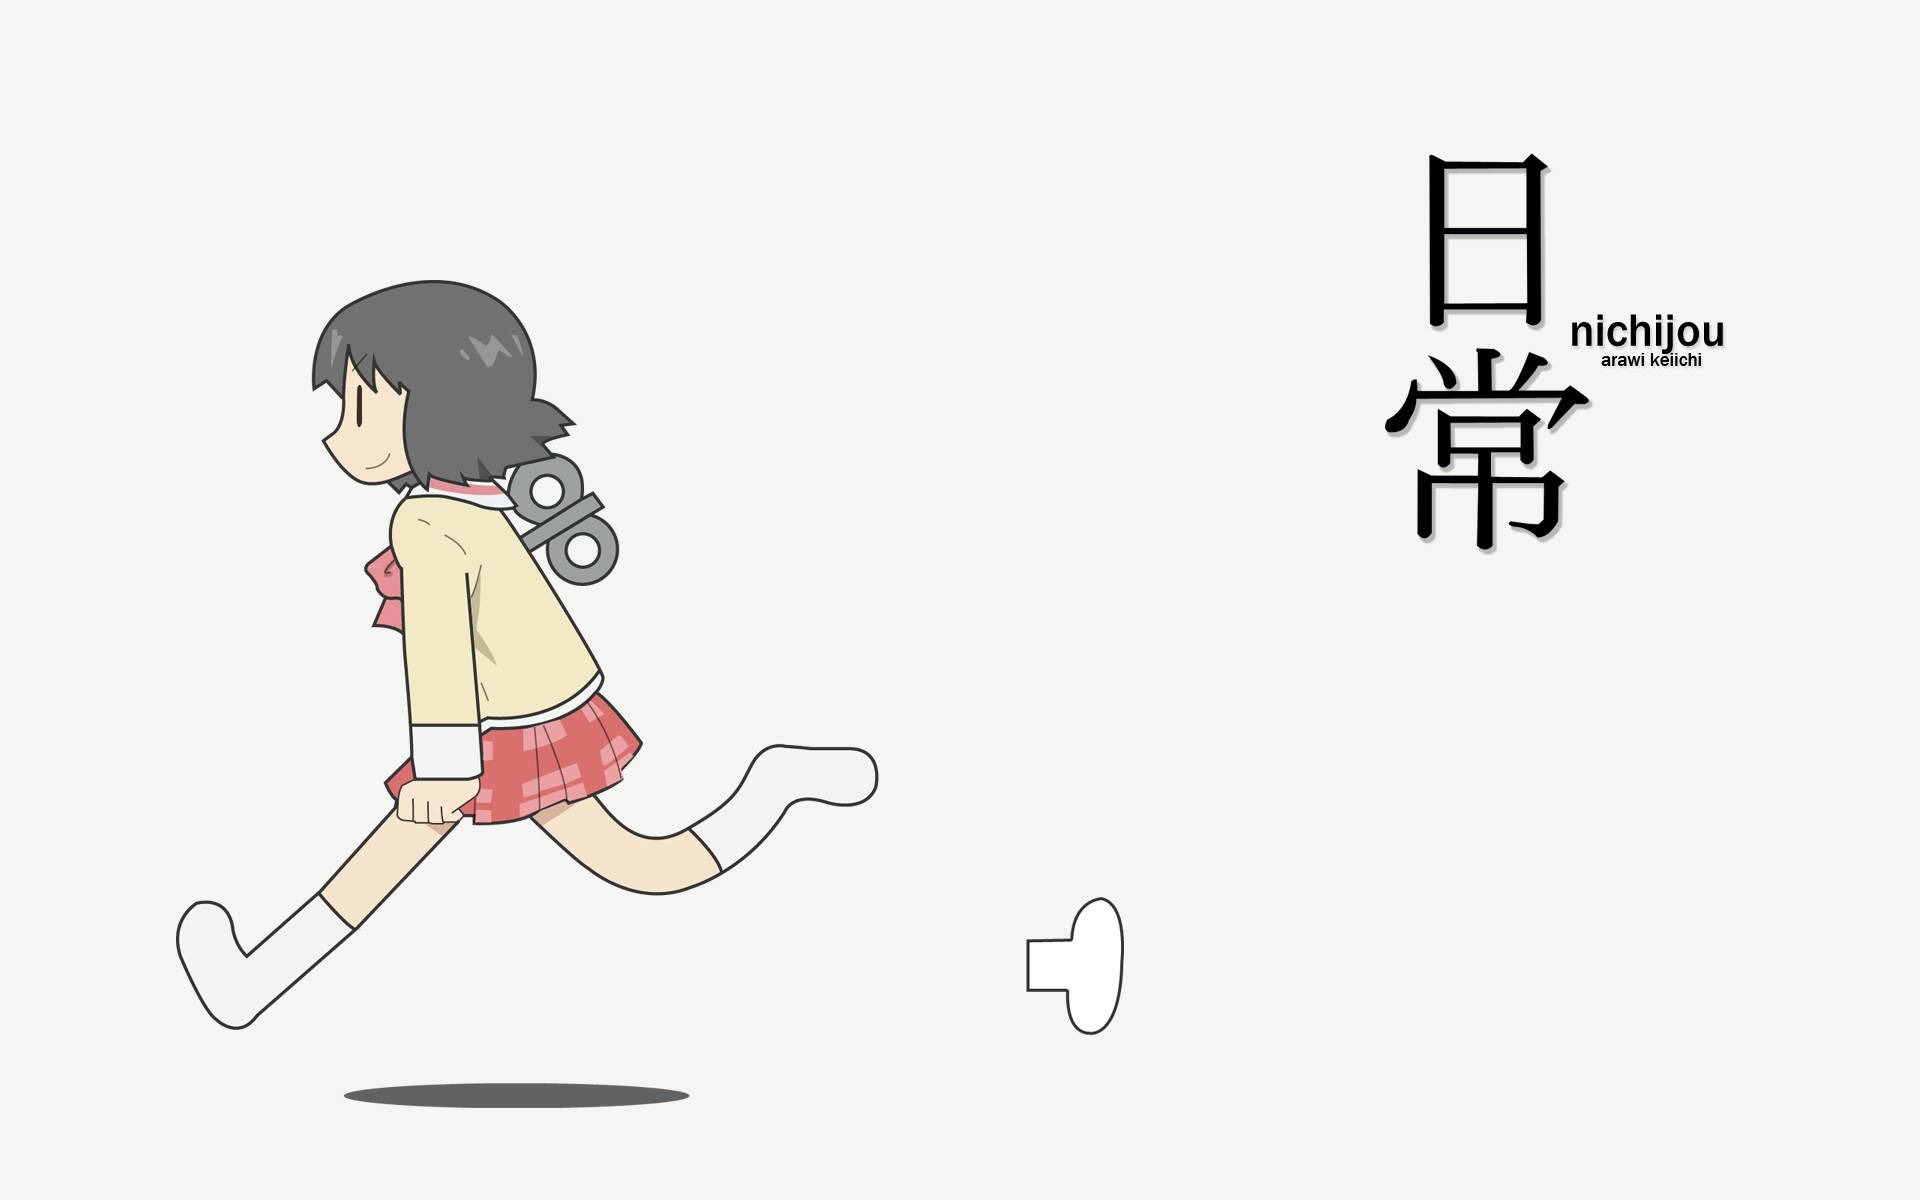 mai goes hard #nichijou #anime | TikTok